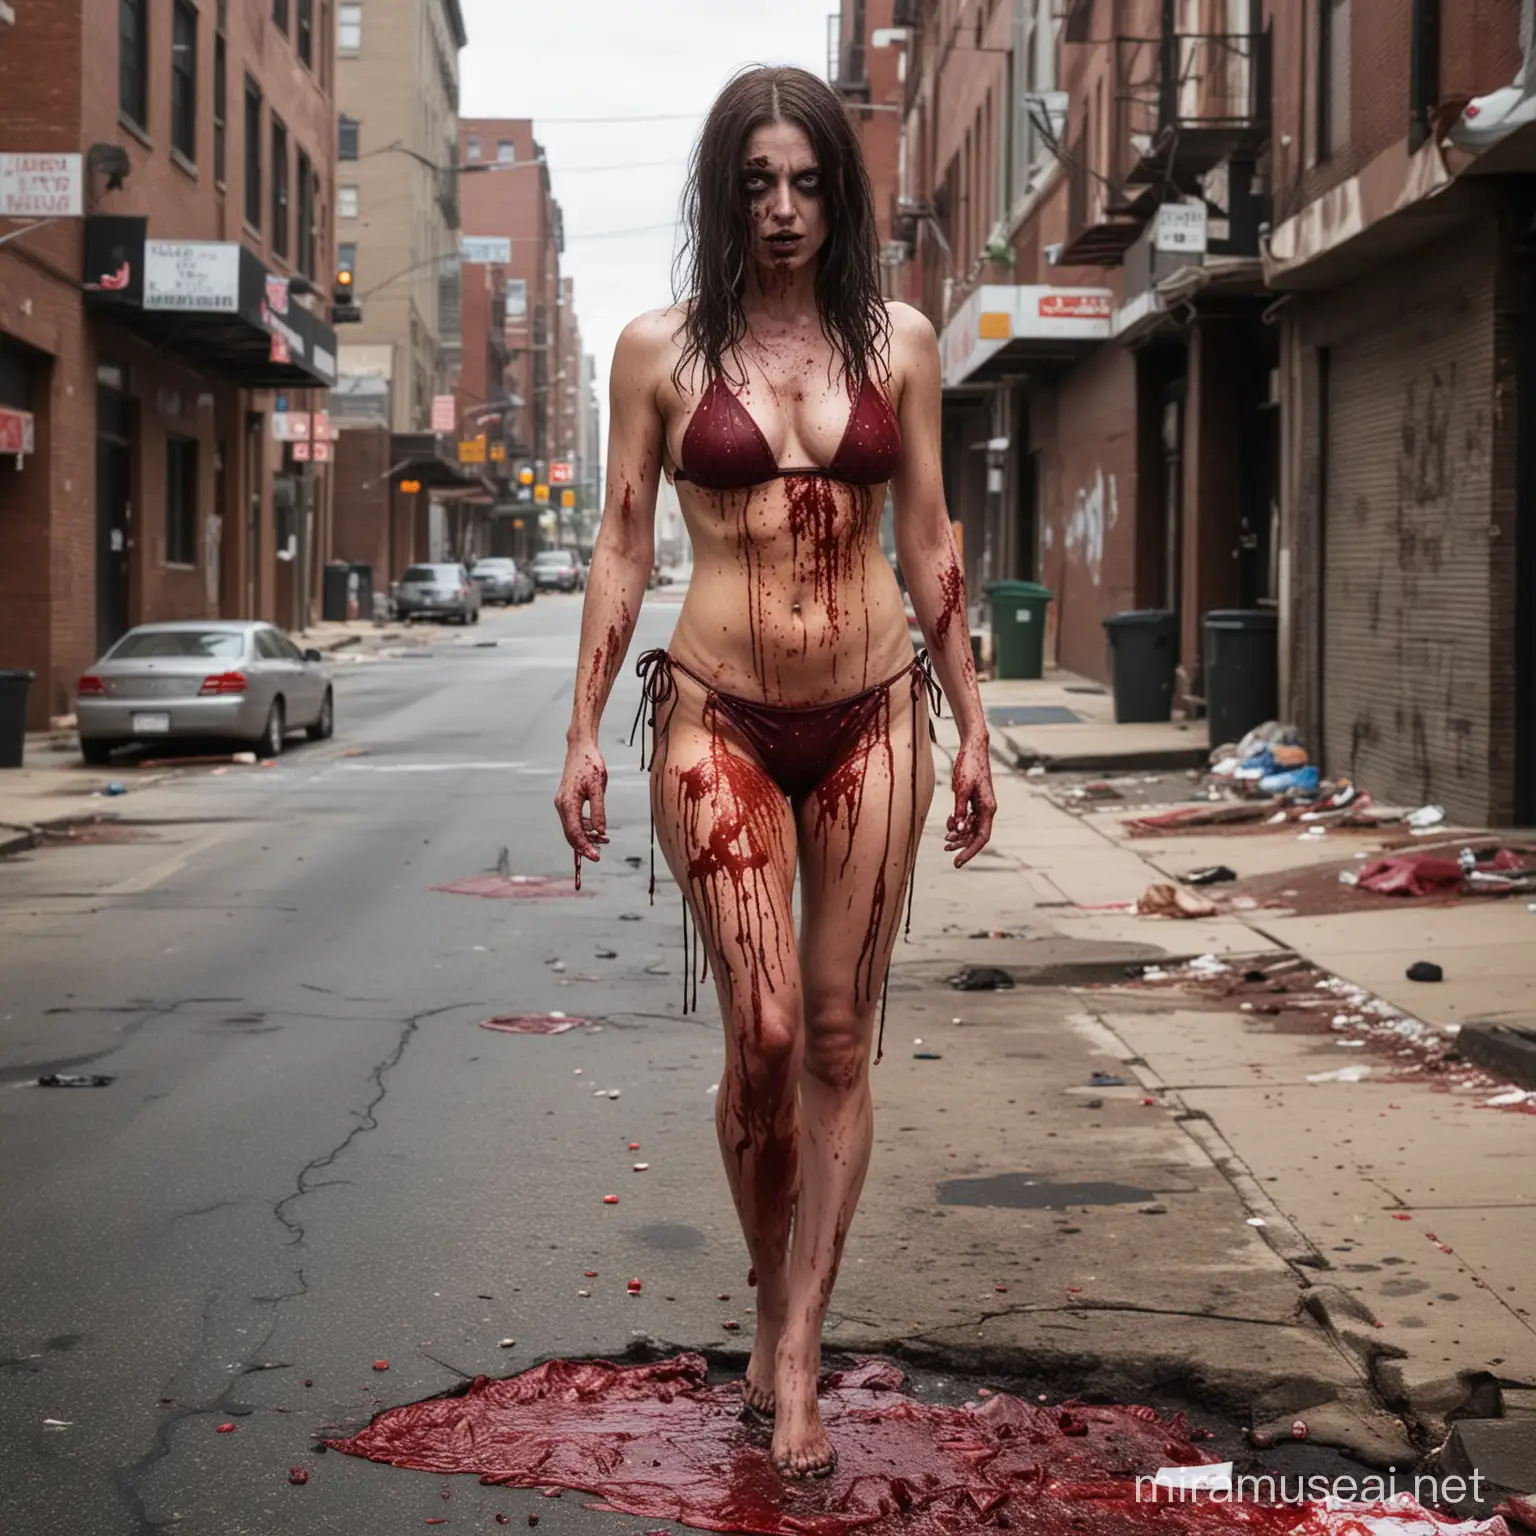 Bloody Zombie Woman in Bikini on Philadelphia Street